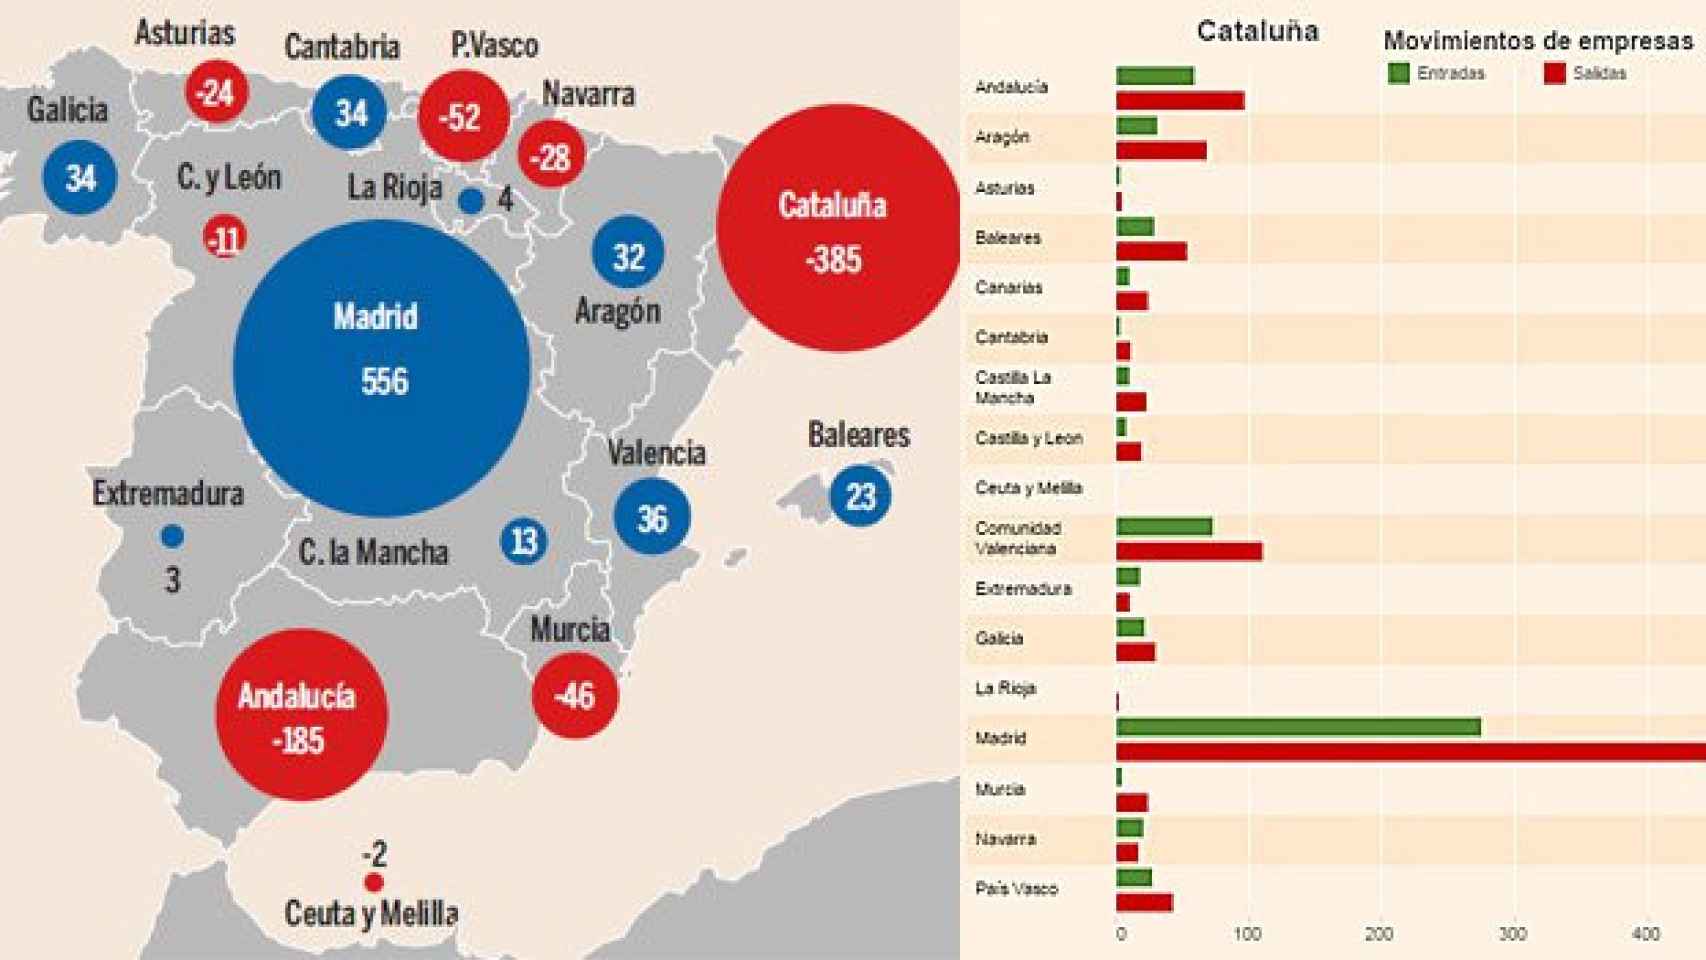 Saldo de entradas y salidas de empresas de cada Comunidad respecto al resto de CCAA en 2014 (izquierda); y empresas que, respecto a Cataluña, han llegado (en verde) o salido (en rojo) de/a cada una del resto de CCAA en 2014 (derecha)